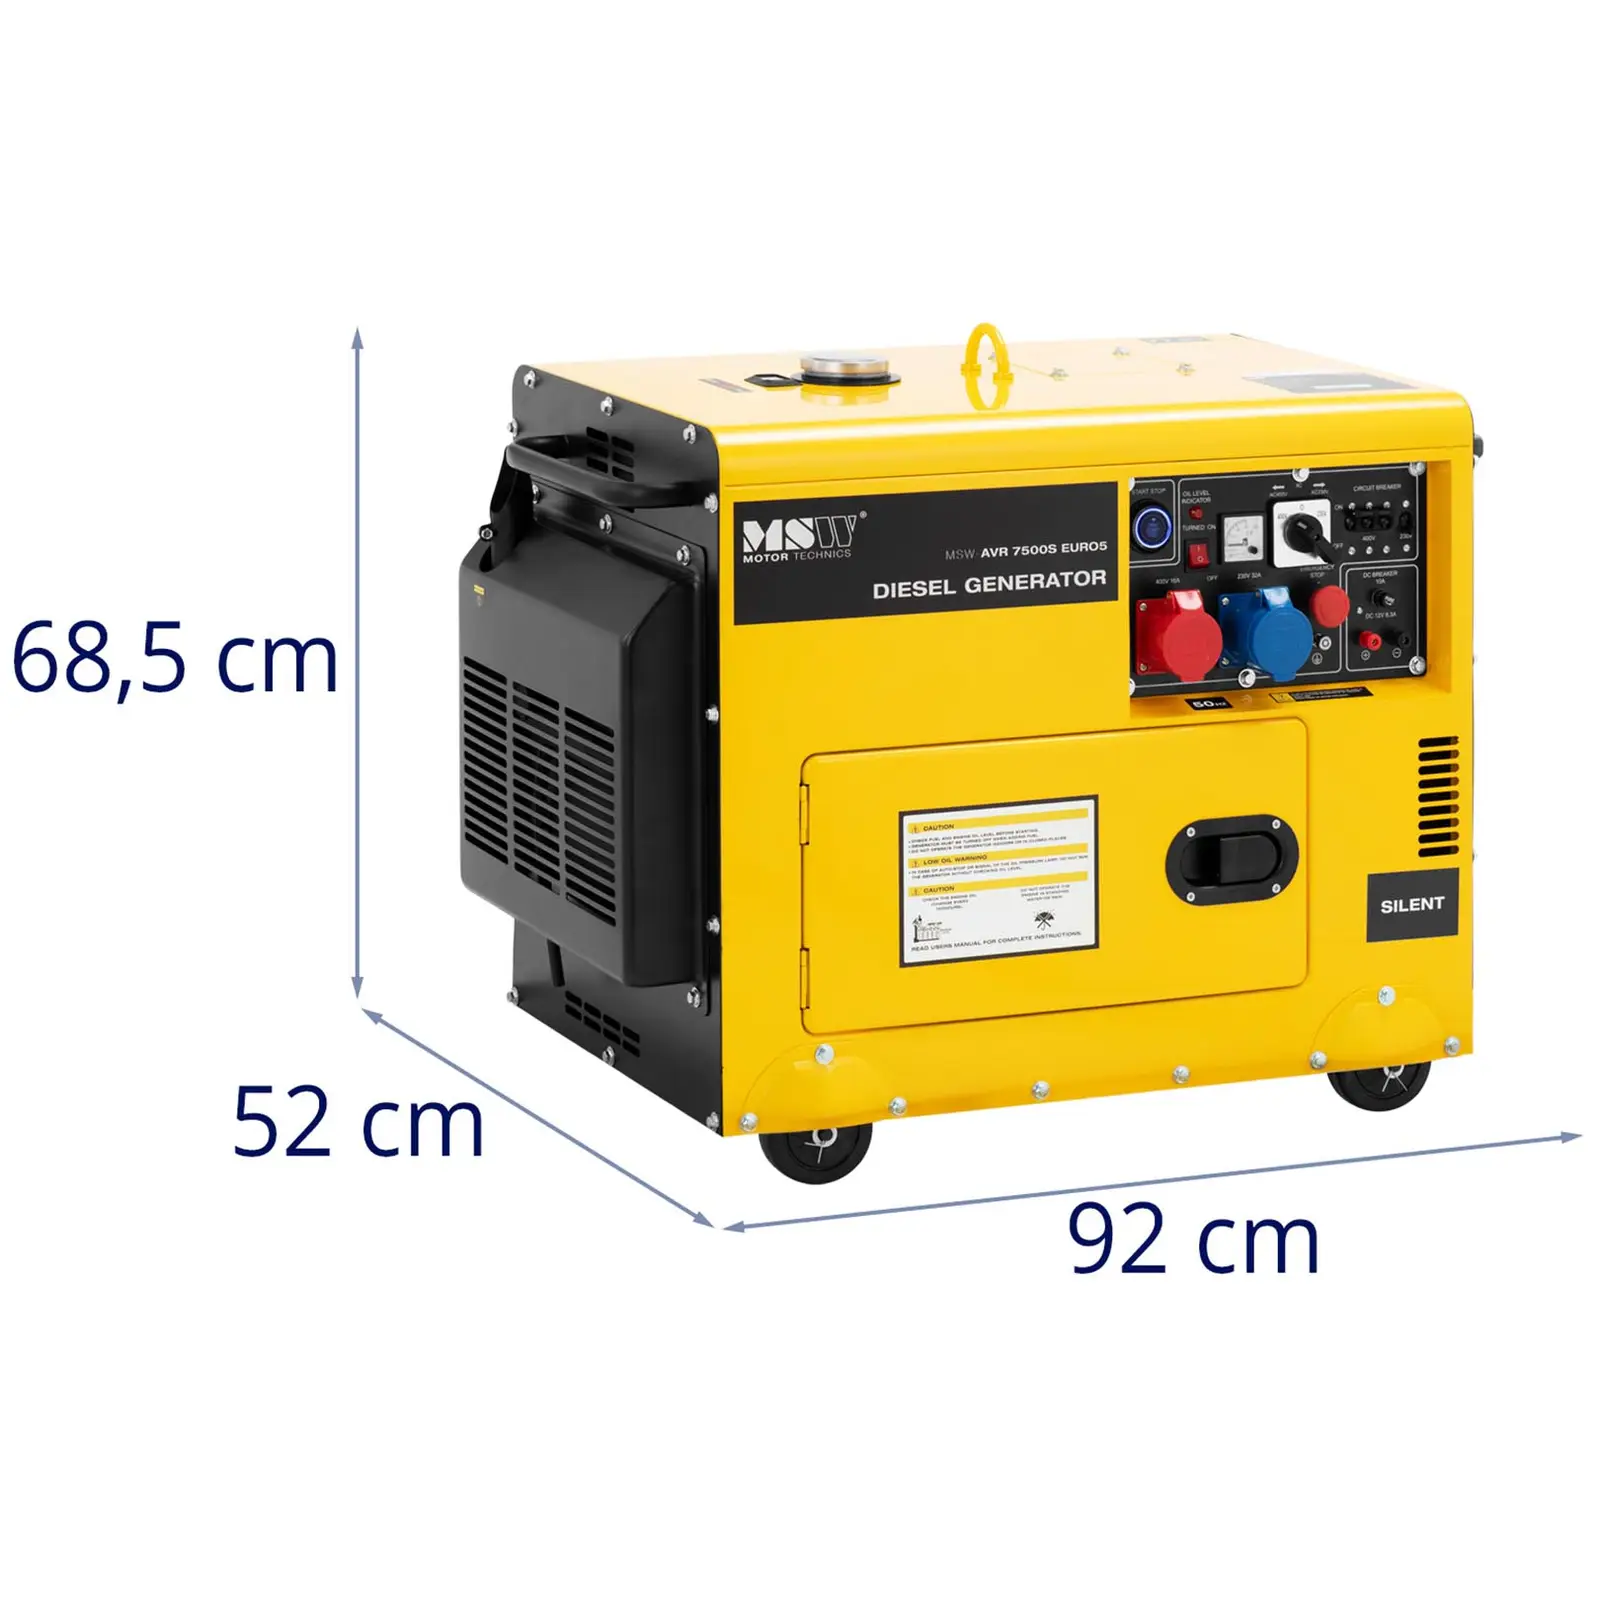 Diesel Generator - 6370 / 7500 W - 16 L - 230/400 V - mobile - AVR - Euro 5